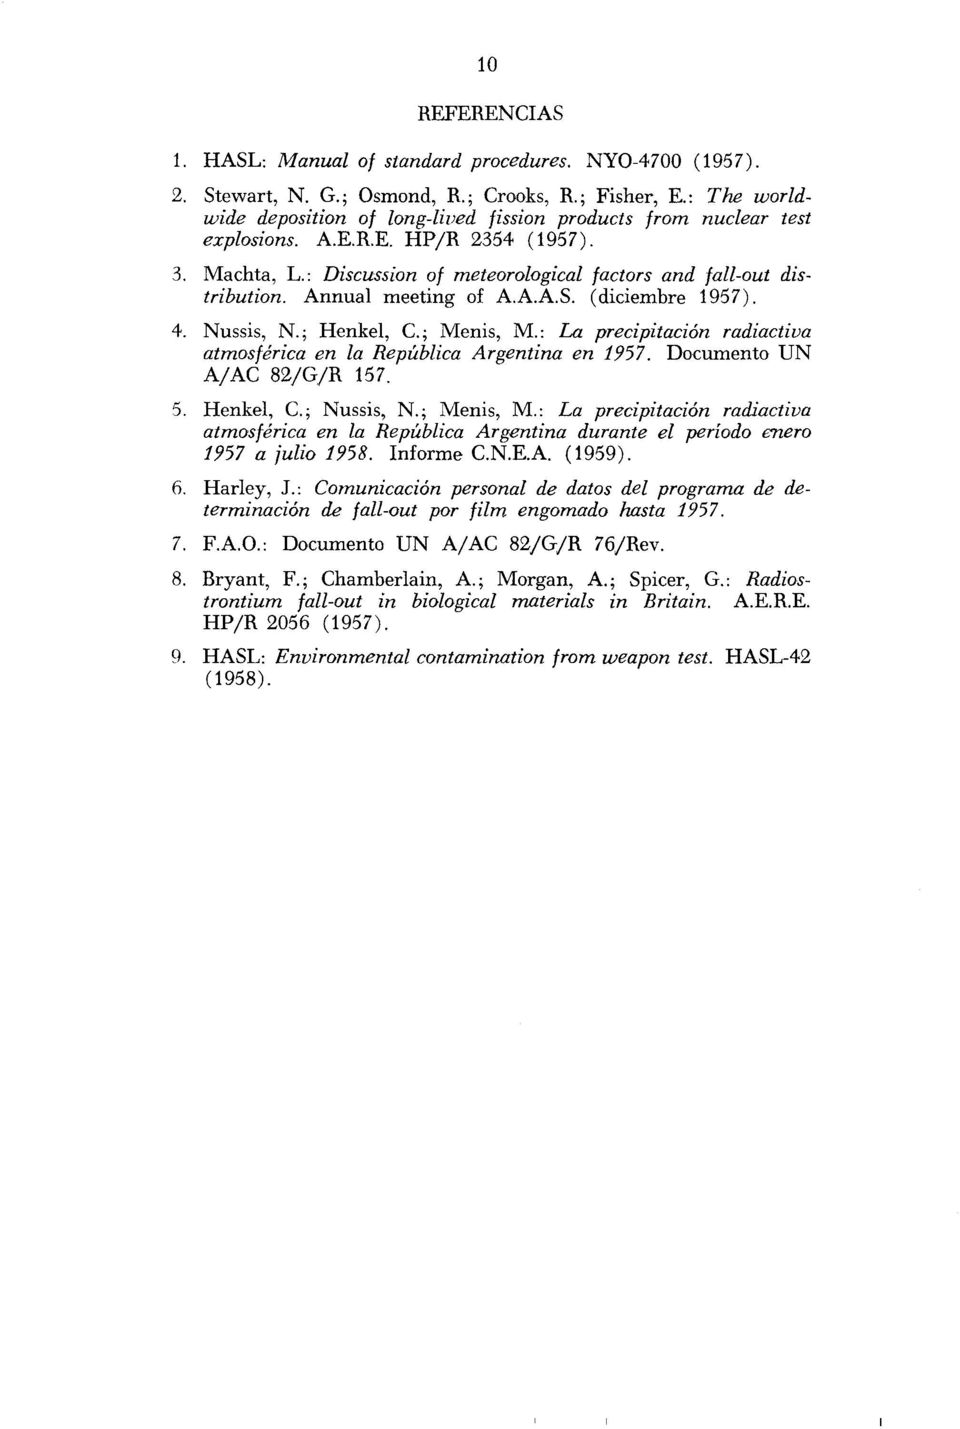 Annual meeting of A.A.A.S. (diciembre 1957). 4. Nussis, N.; Henkel, C; Menis, M.: La precipitación radiactiva atmosférica en la República Argentina en 1957. Documento UN A/AC 82/G/R 157. 5.